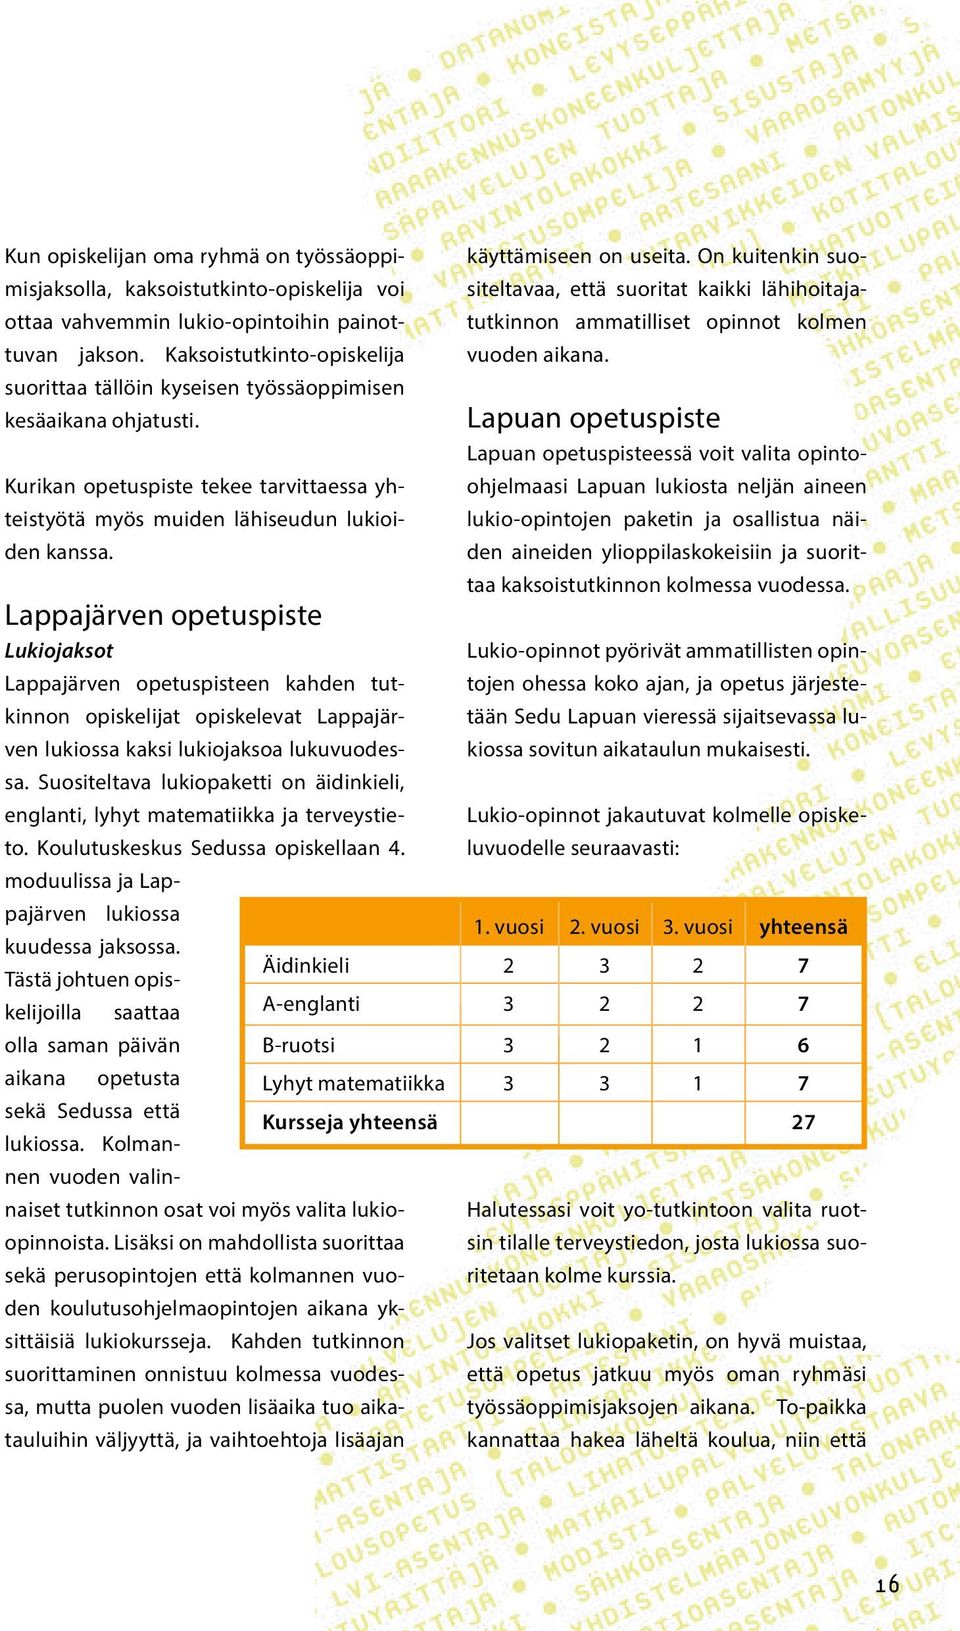 Lappajärven opetuspiste Lukiojaksot käyttämiseen on useita. On kuitenkin suositeltavaa, että suoritat kaikki lähihoitajatutkinnon ammatilliset opinnot kolmen vuoden aikana.